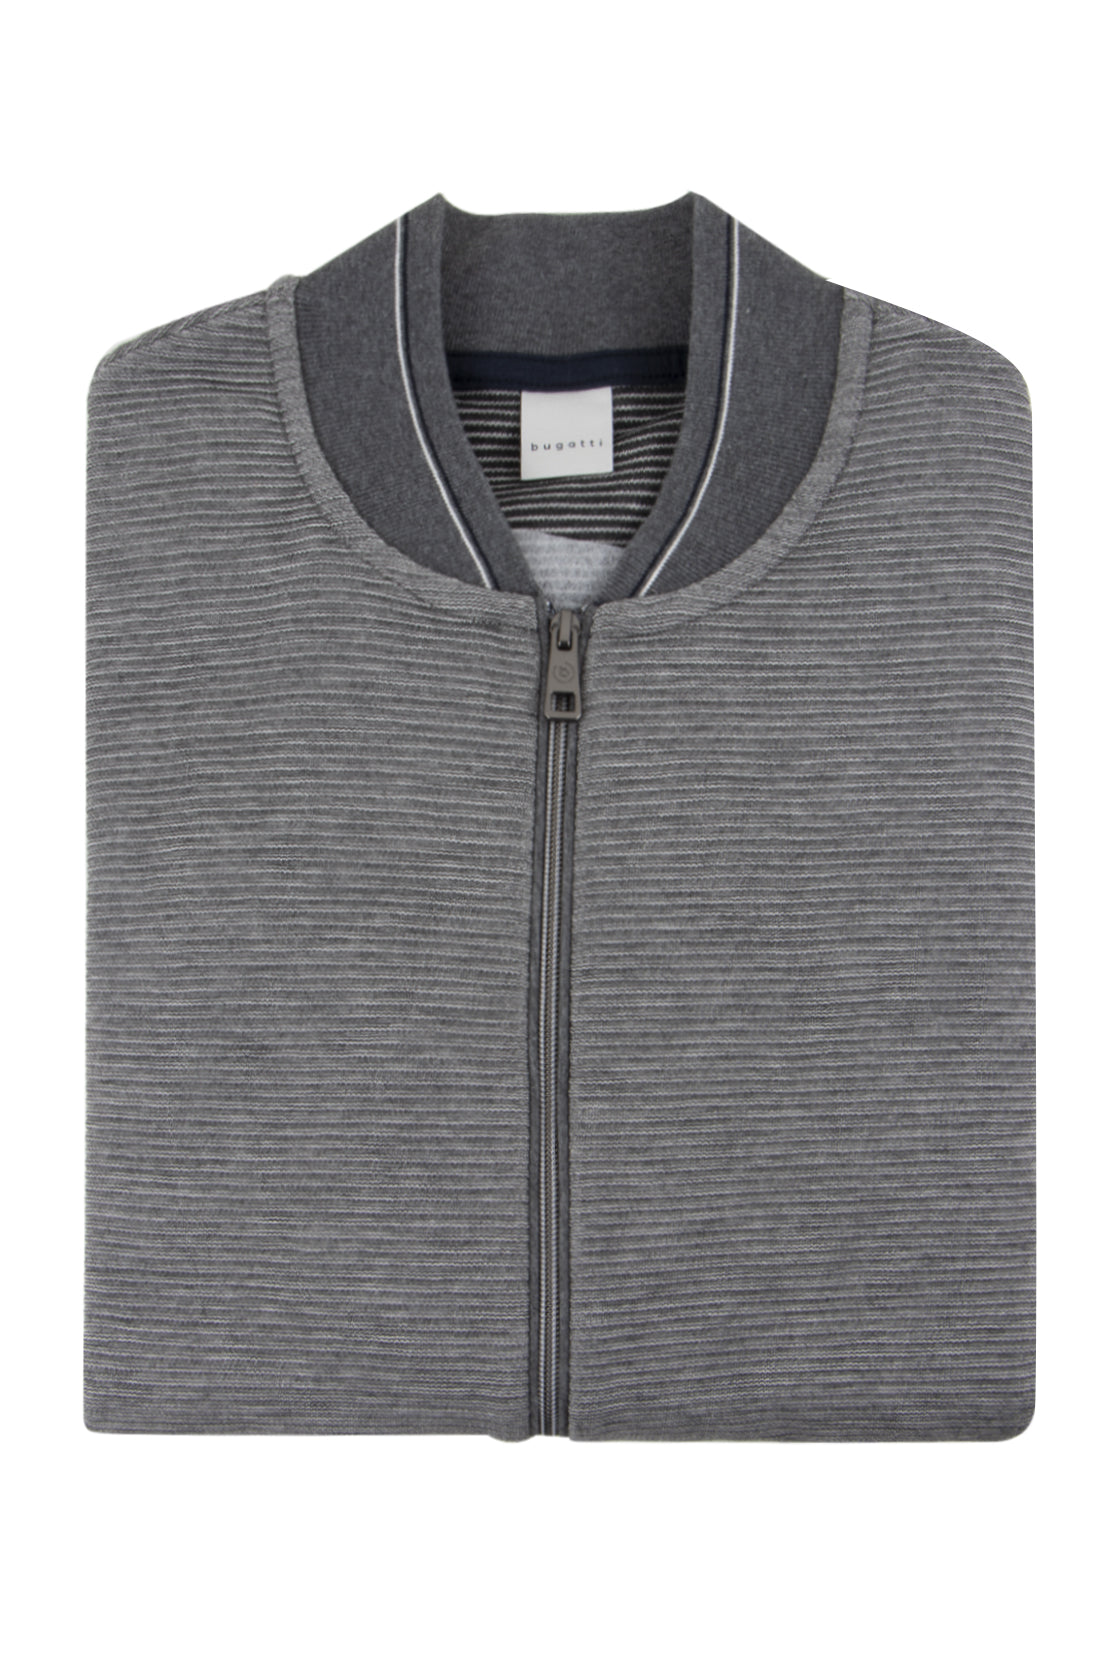 Bugatti Full Zip Sweater Grey